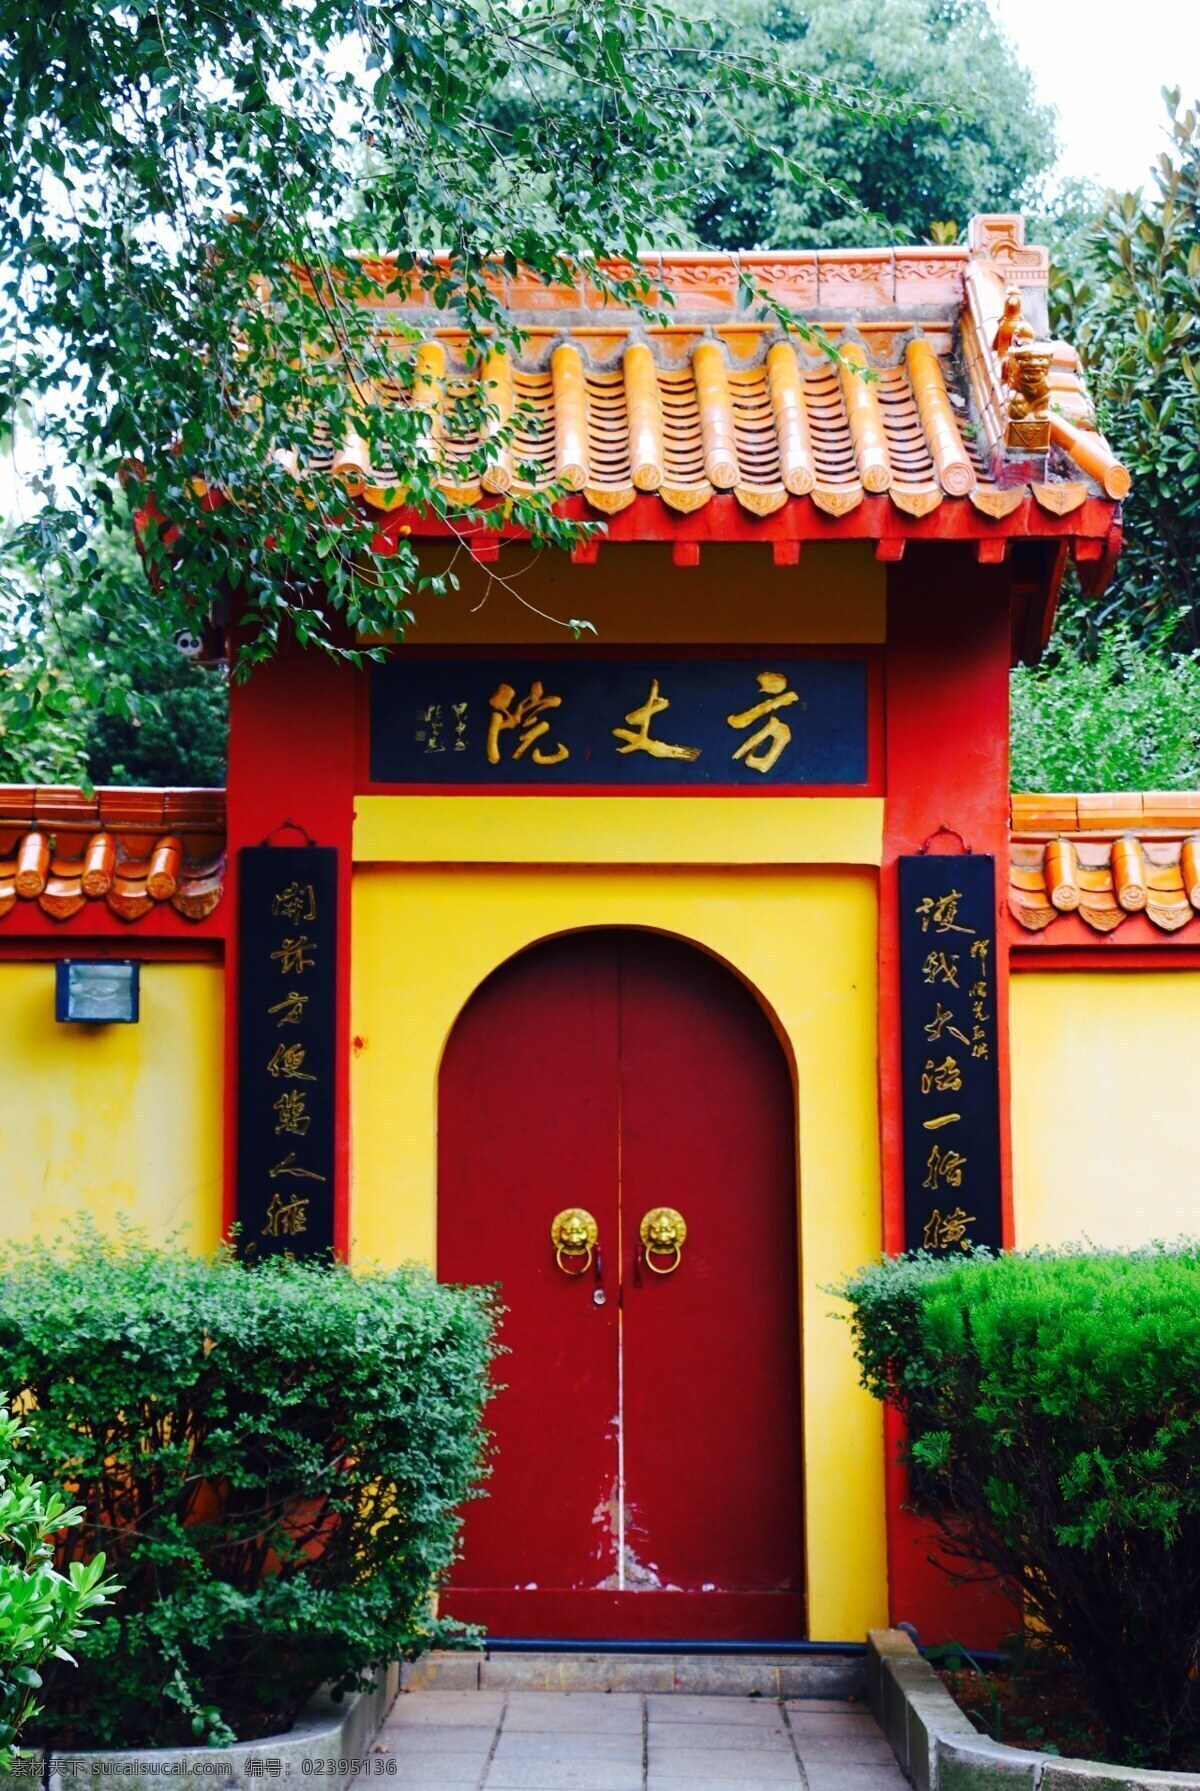 寺庙 方丈院 方丈 住处 门头 红门 橙色的瓦 黄色的墙 大门 拱门 和尚 住所 住持 家居建筑 建筑园林 建筑摄影